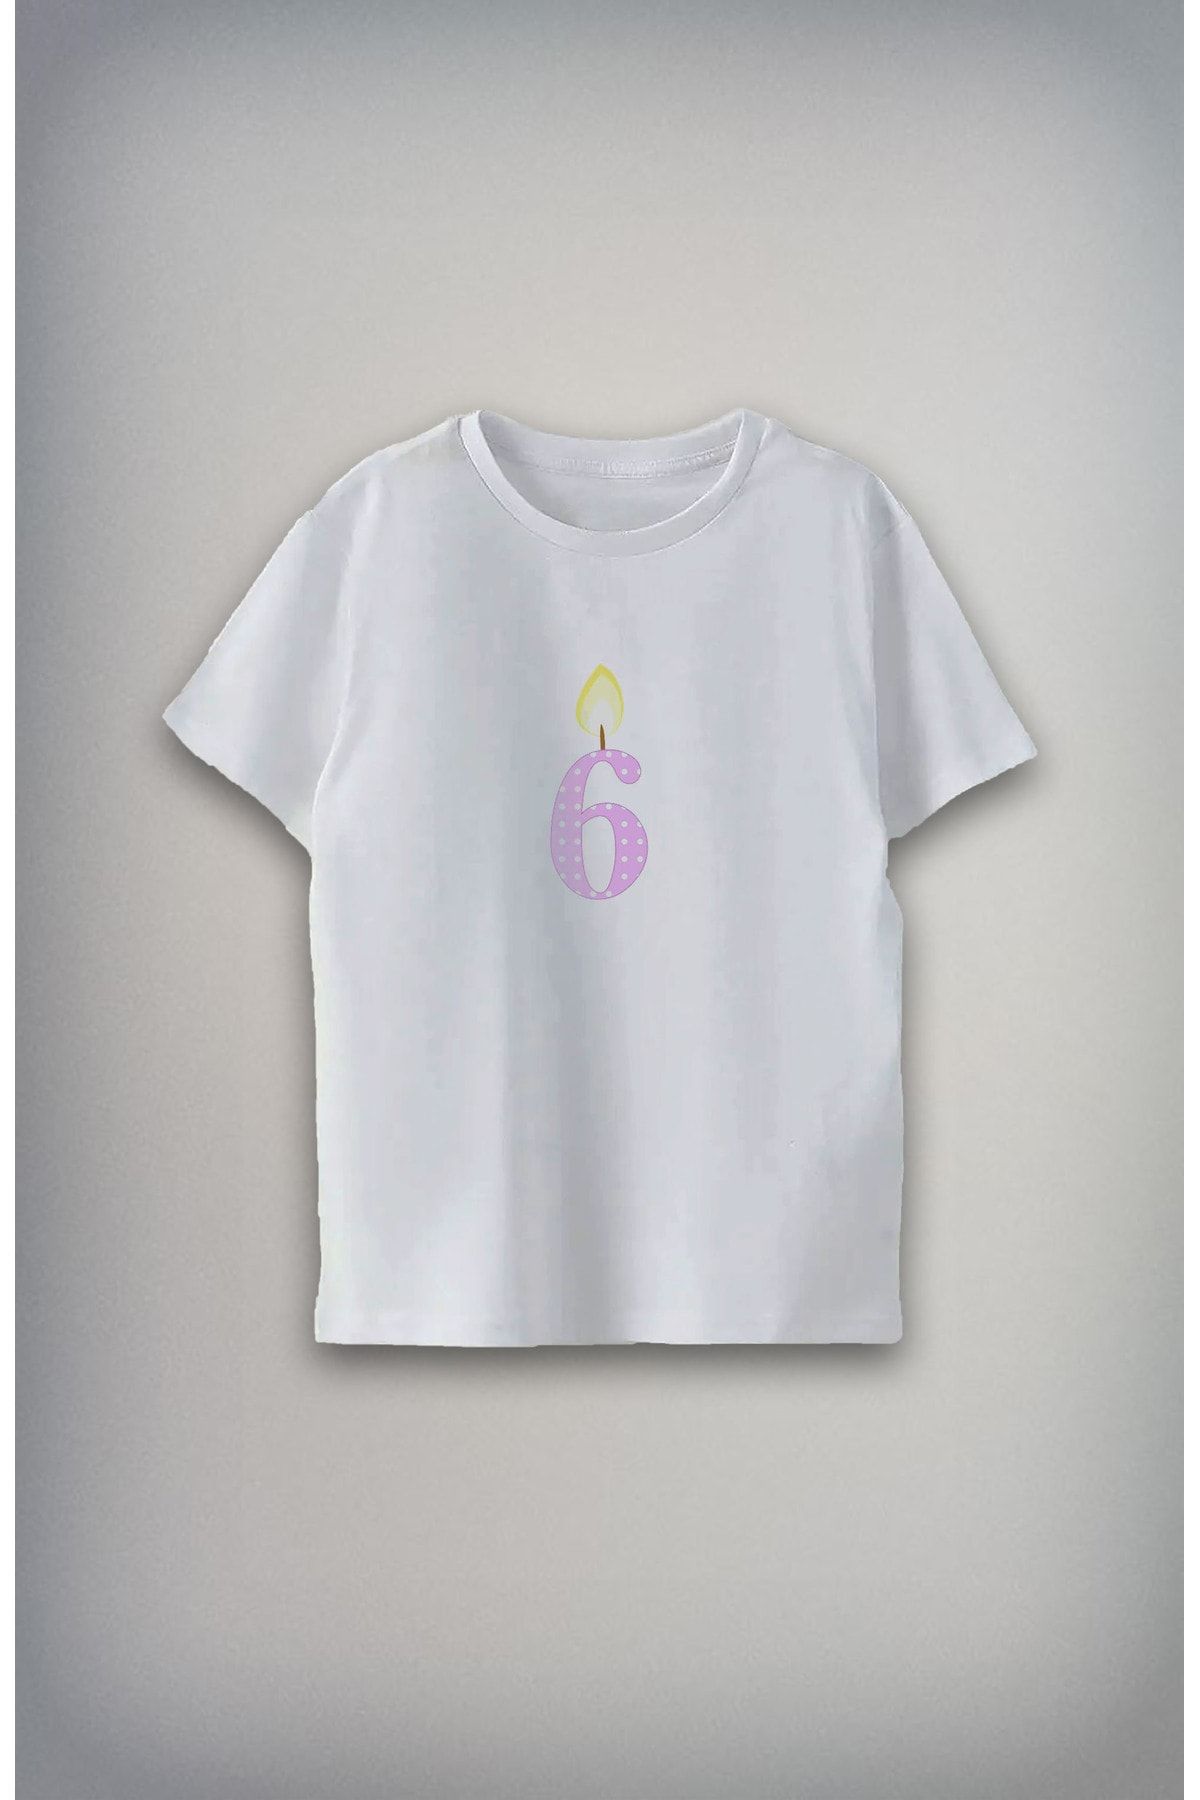 Darkia 6 Yaş Özel Tasarım Baskılı Unisex Çocuk T-shirt Tişört